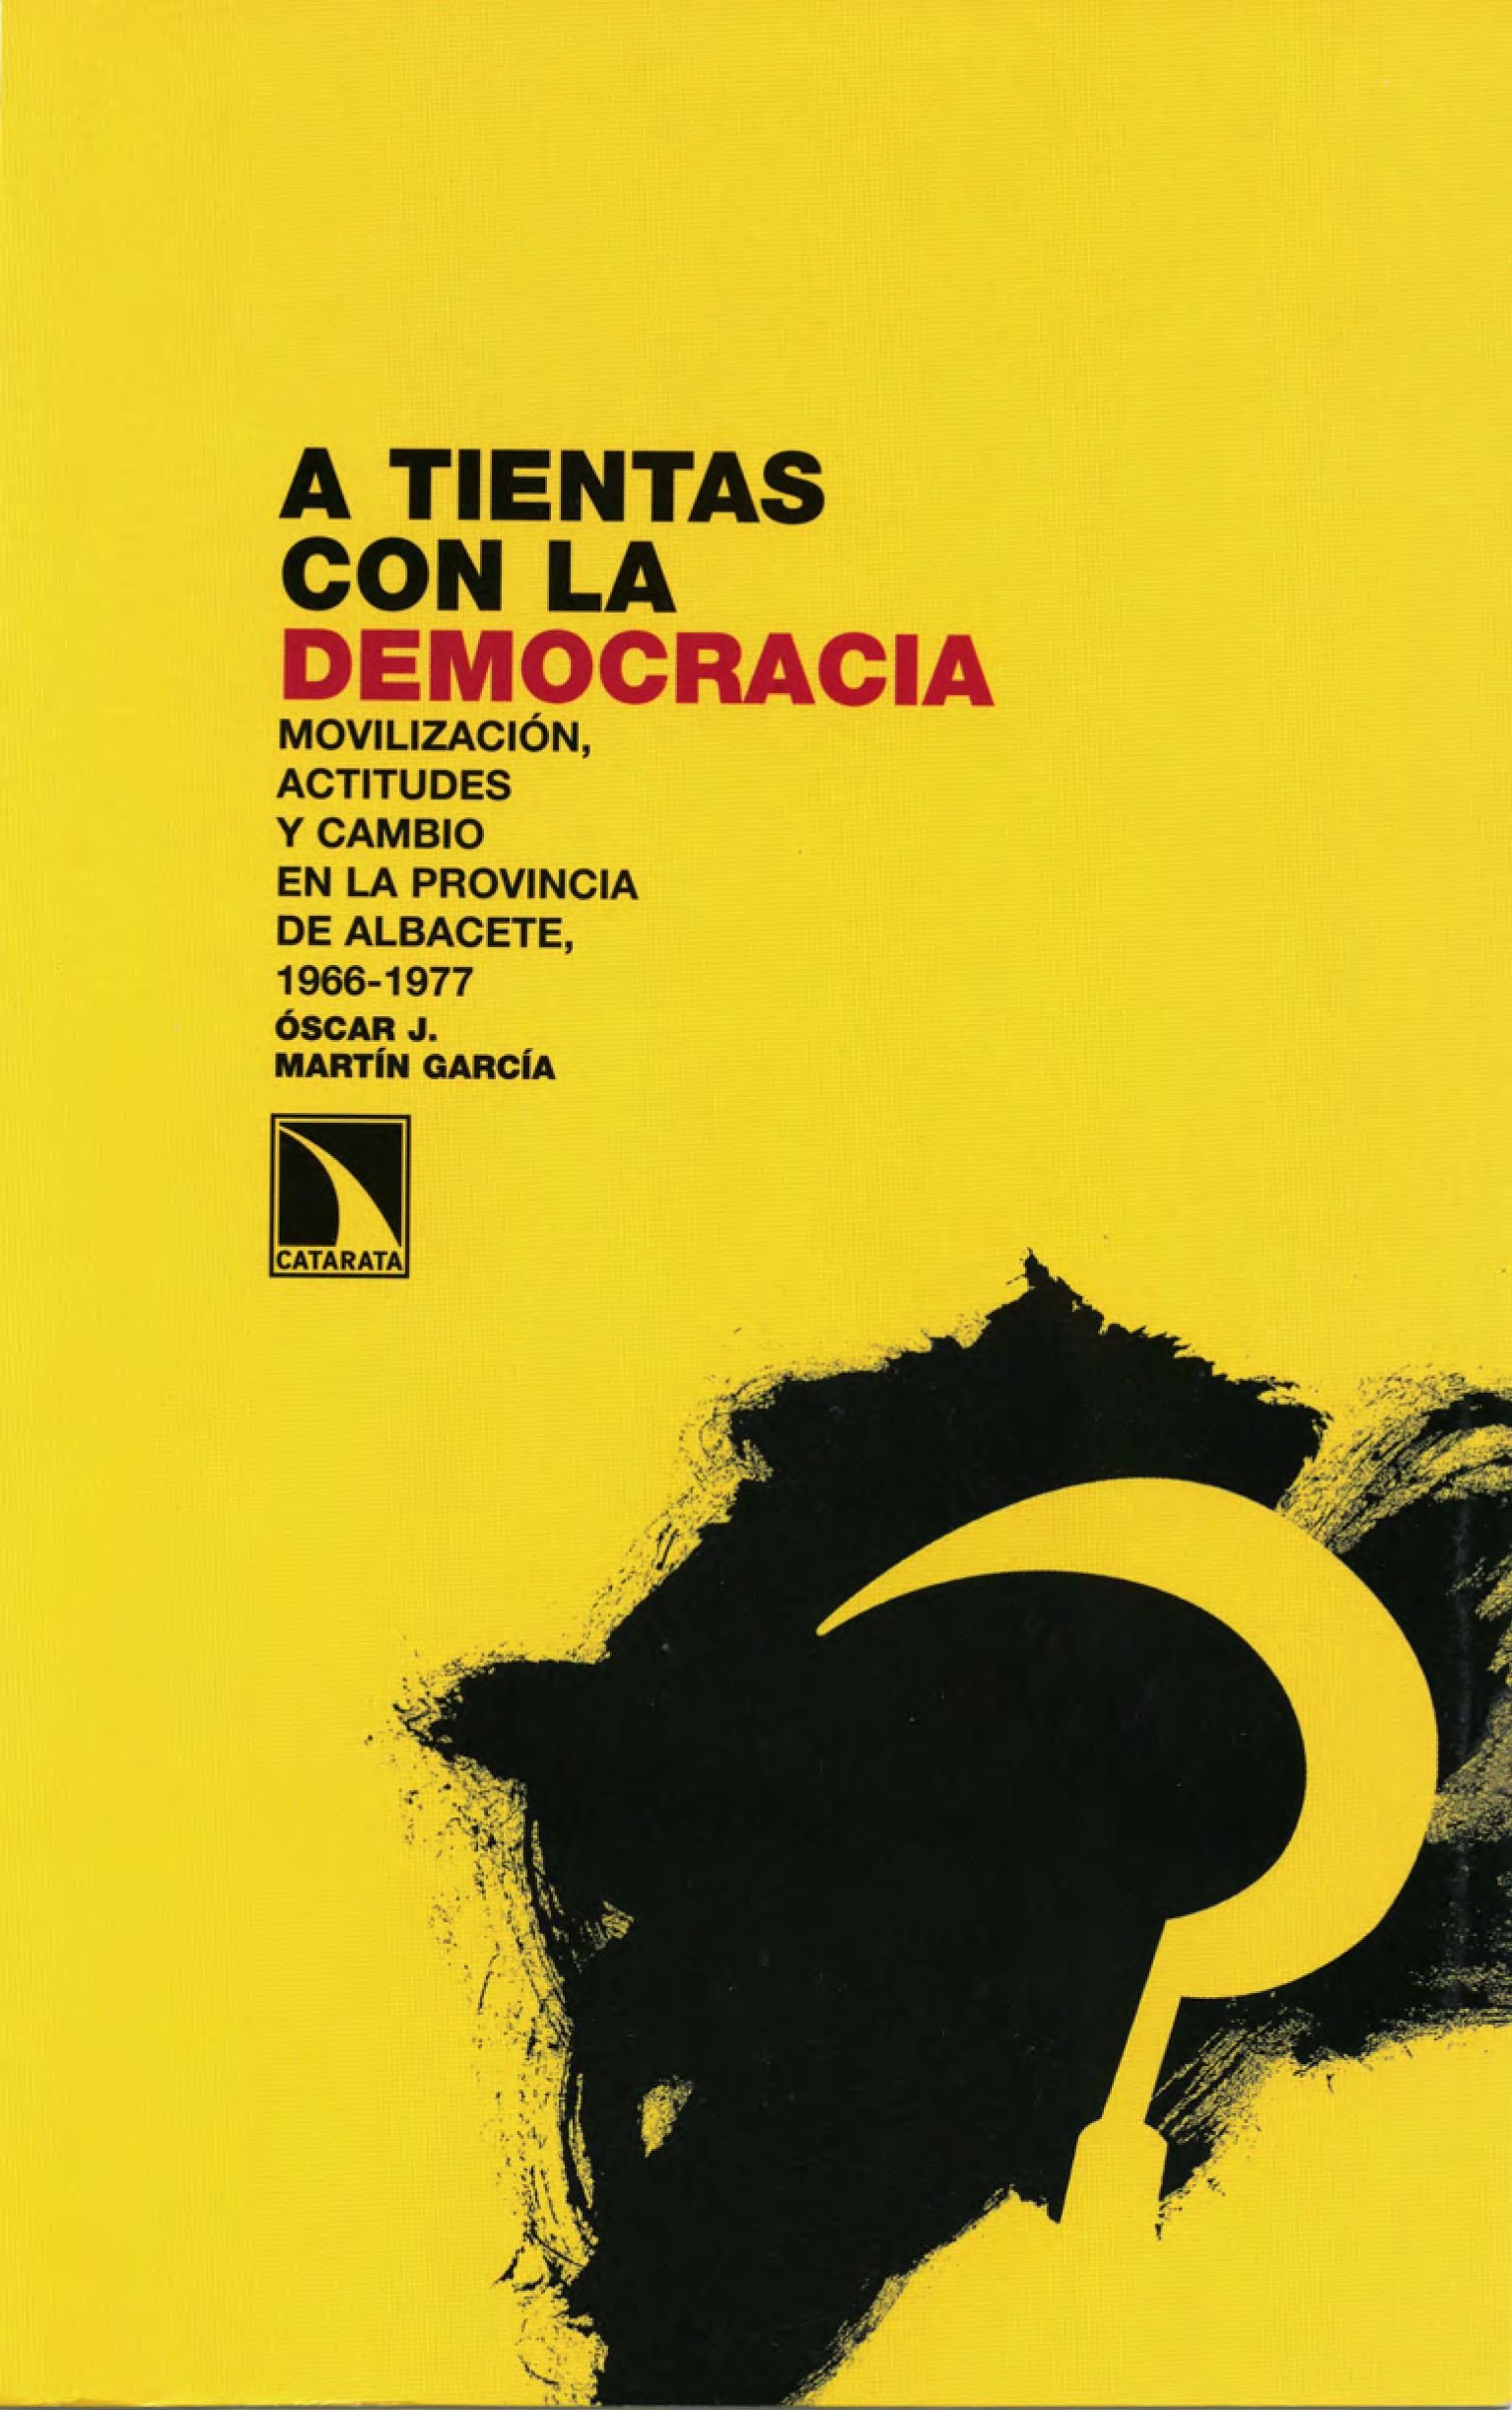 Imagen de portada del libro A tientas con la democracia. Movilización y cambio político en la provincia de Albacete, 1966-1977